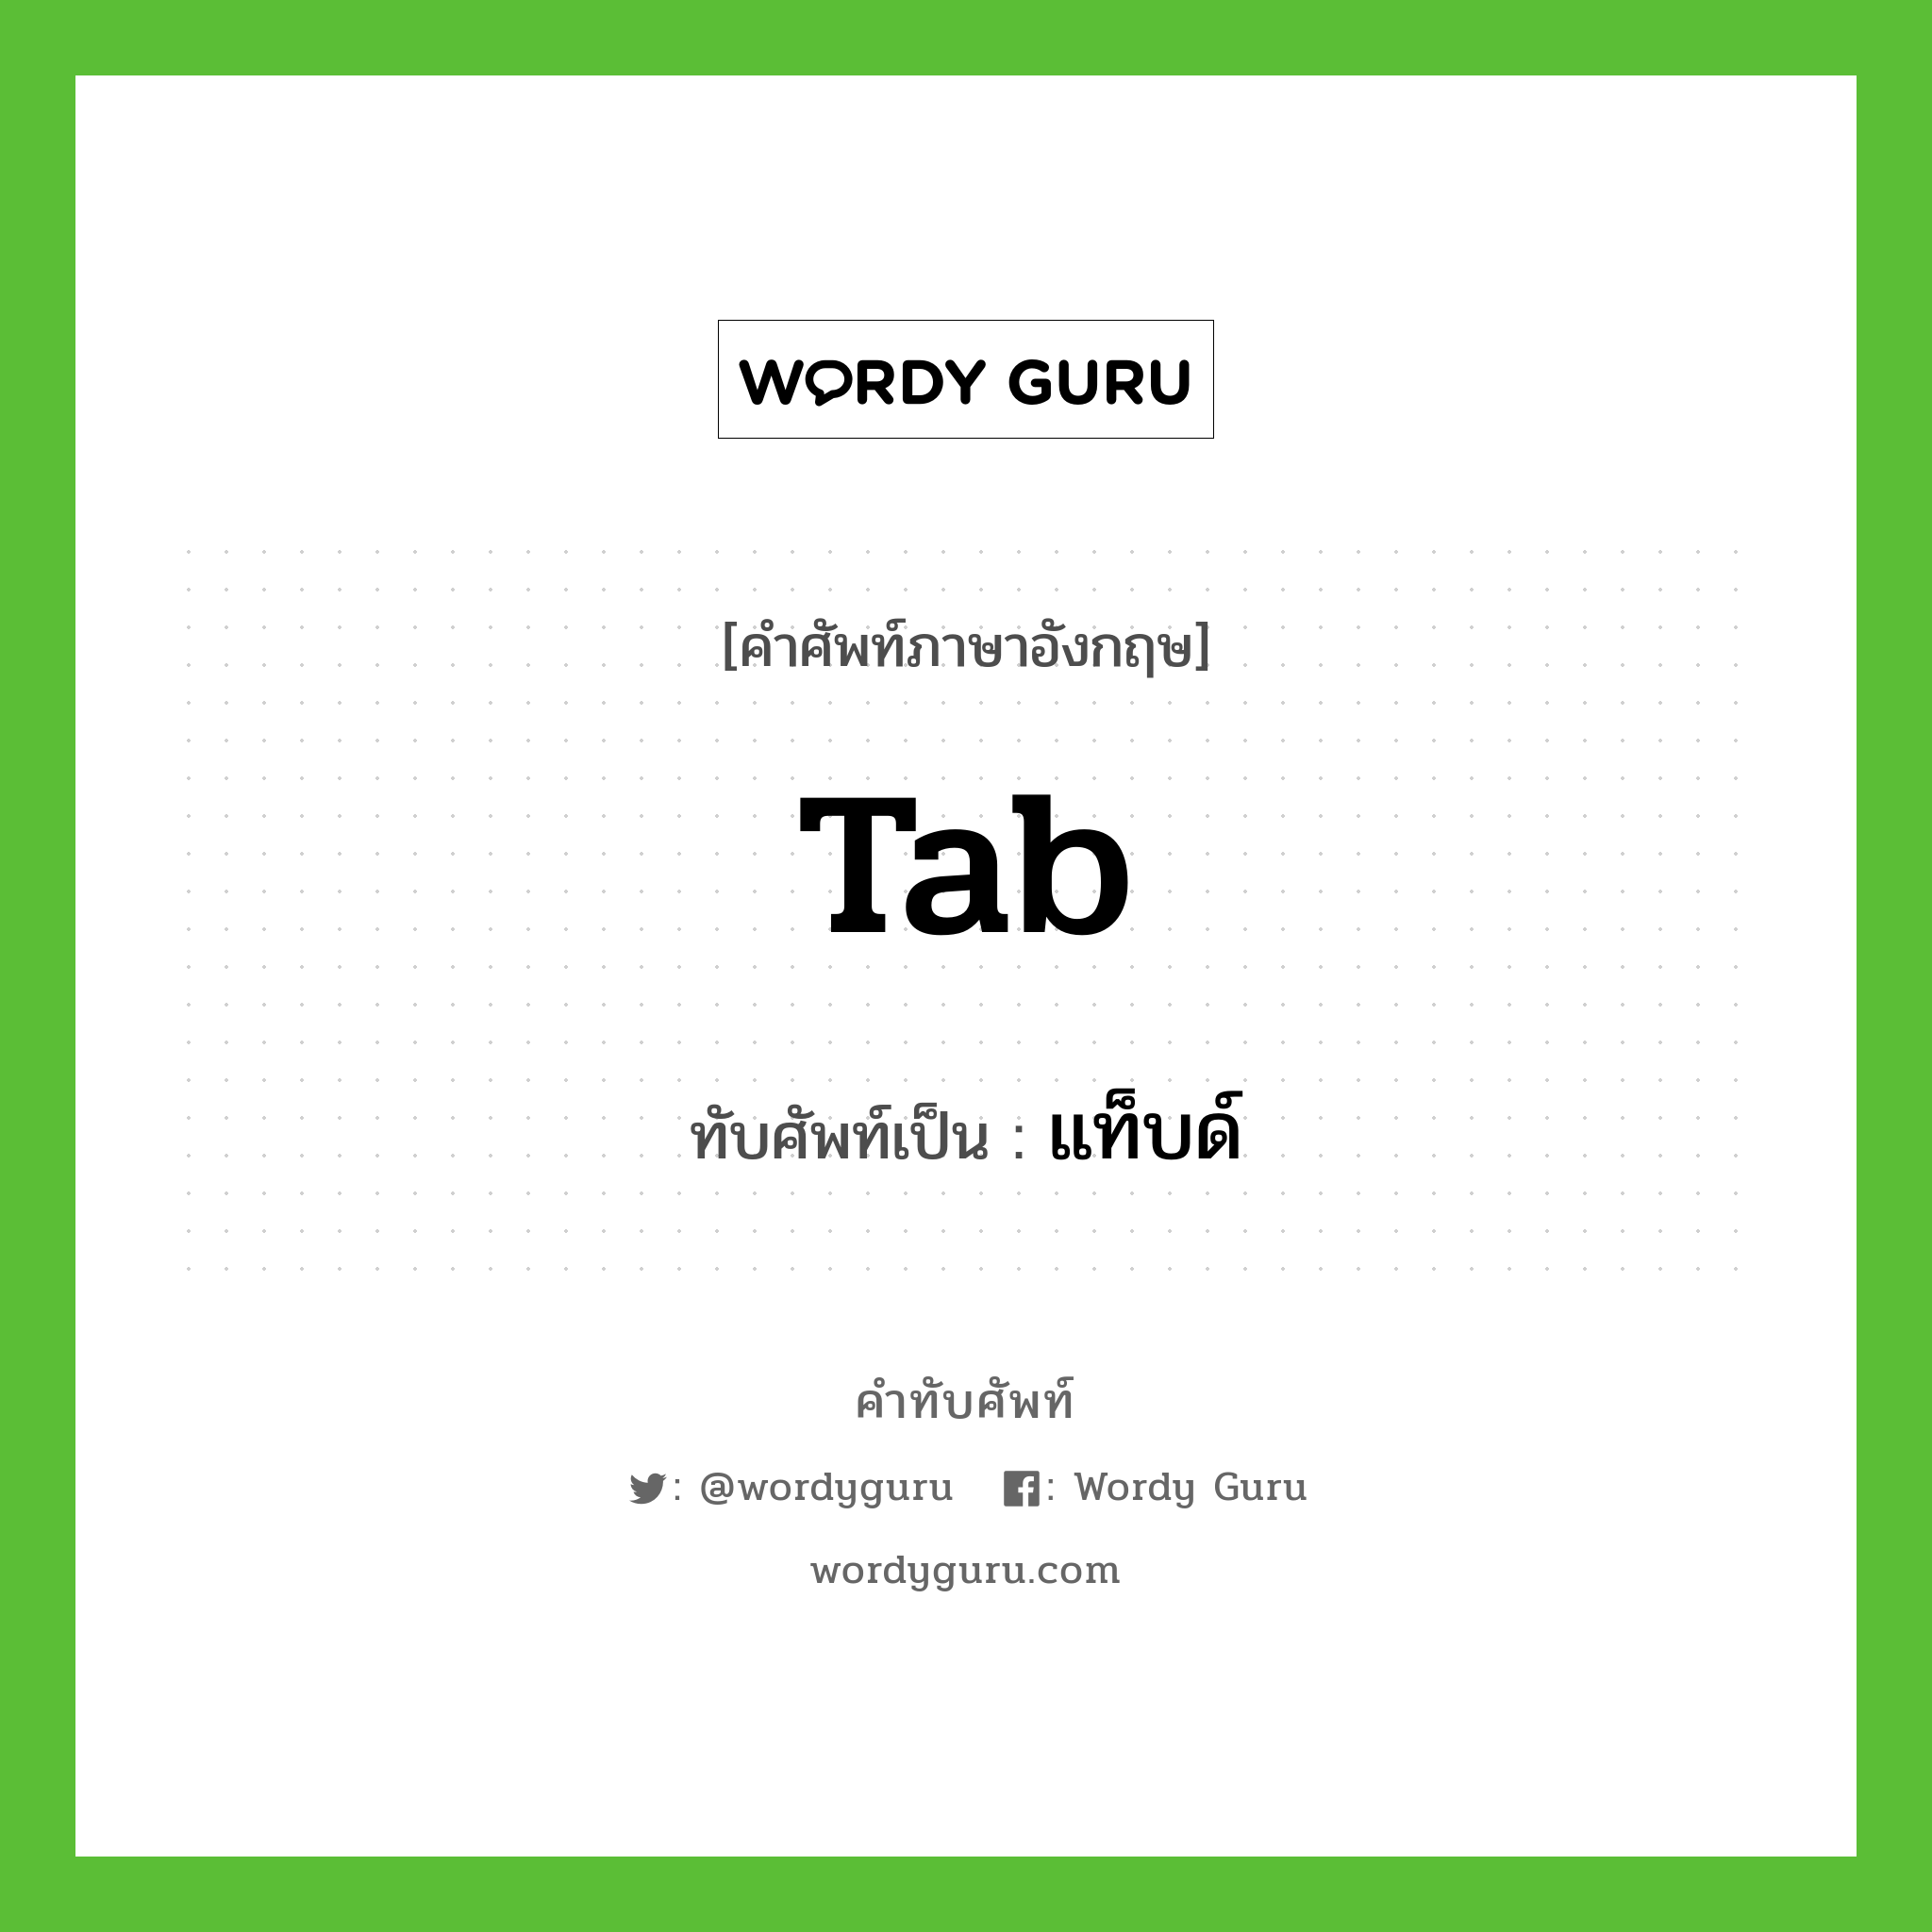 tab เขียนเป็นคำไทยว่าอะไร?, คำศัพท์ภาษาอังกฤษ tab ทับศัพท์เป็น แท็บด์